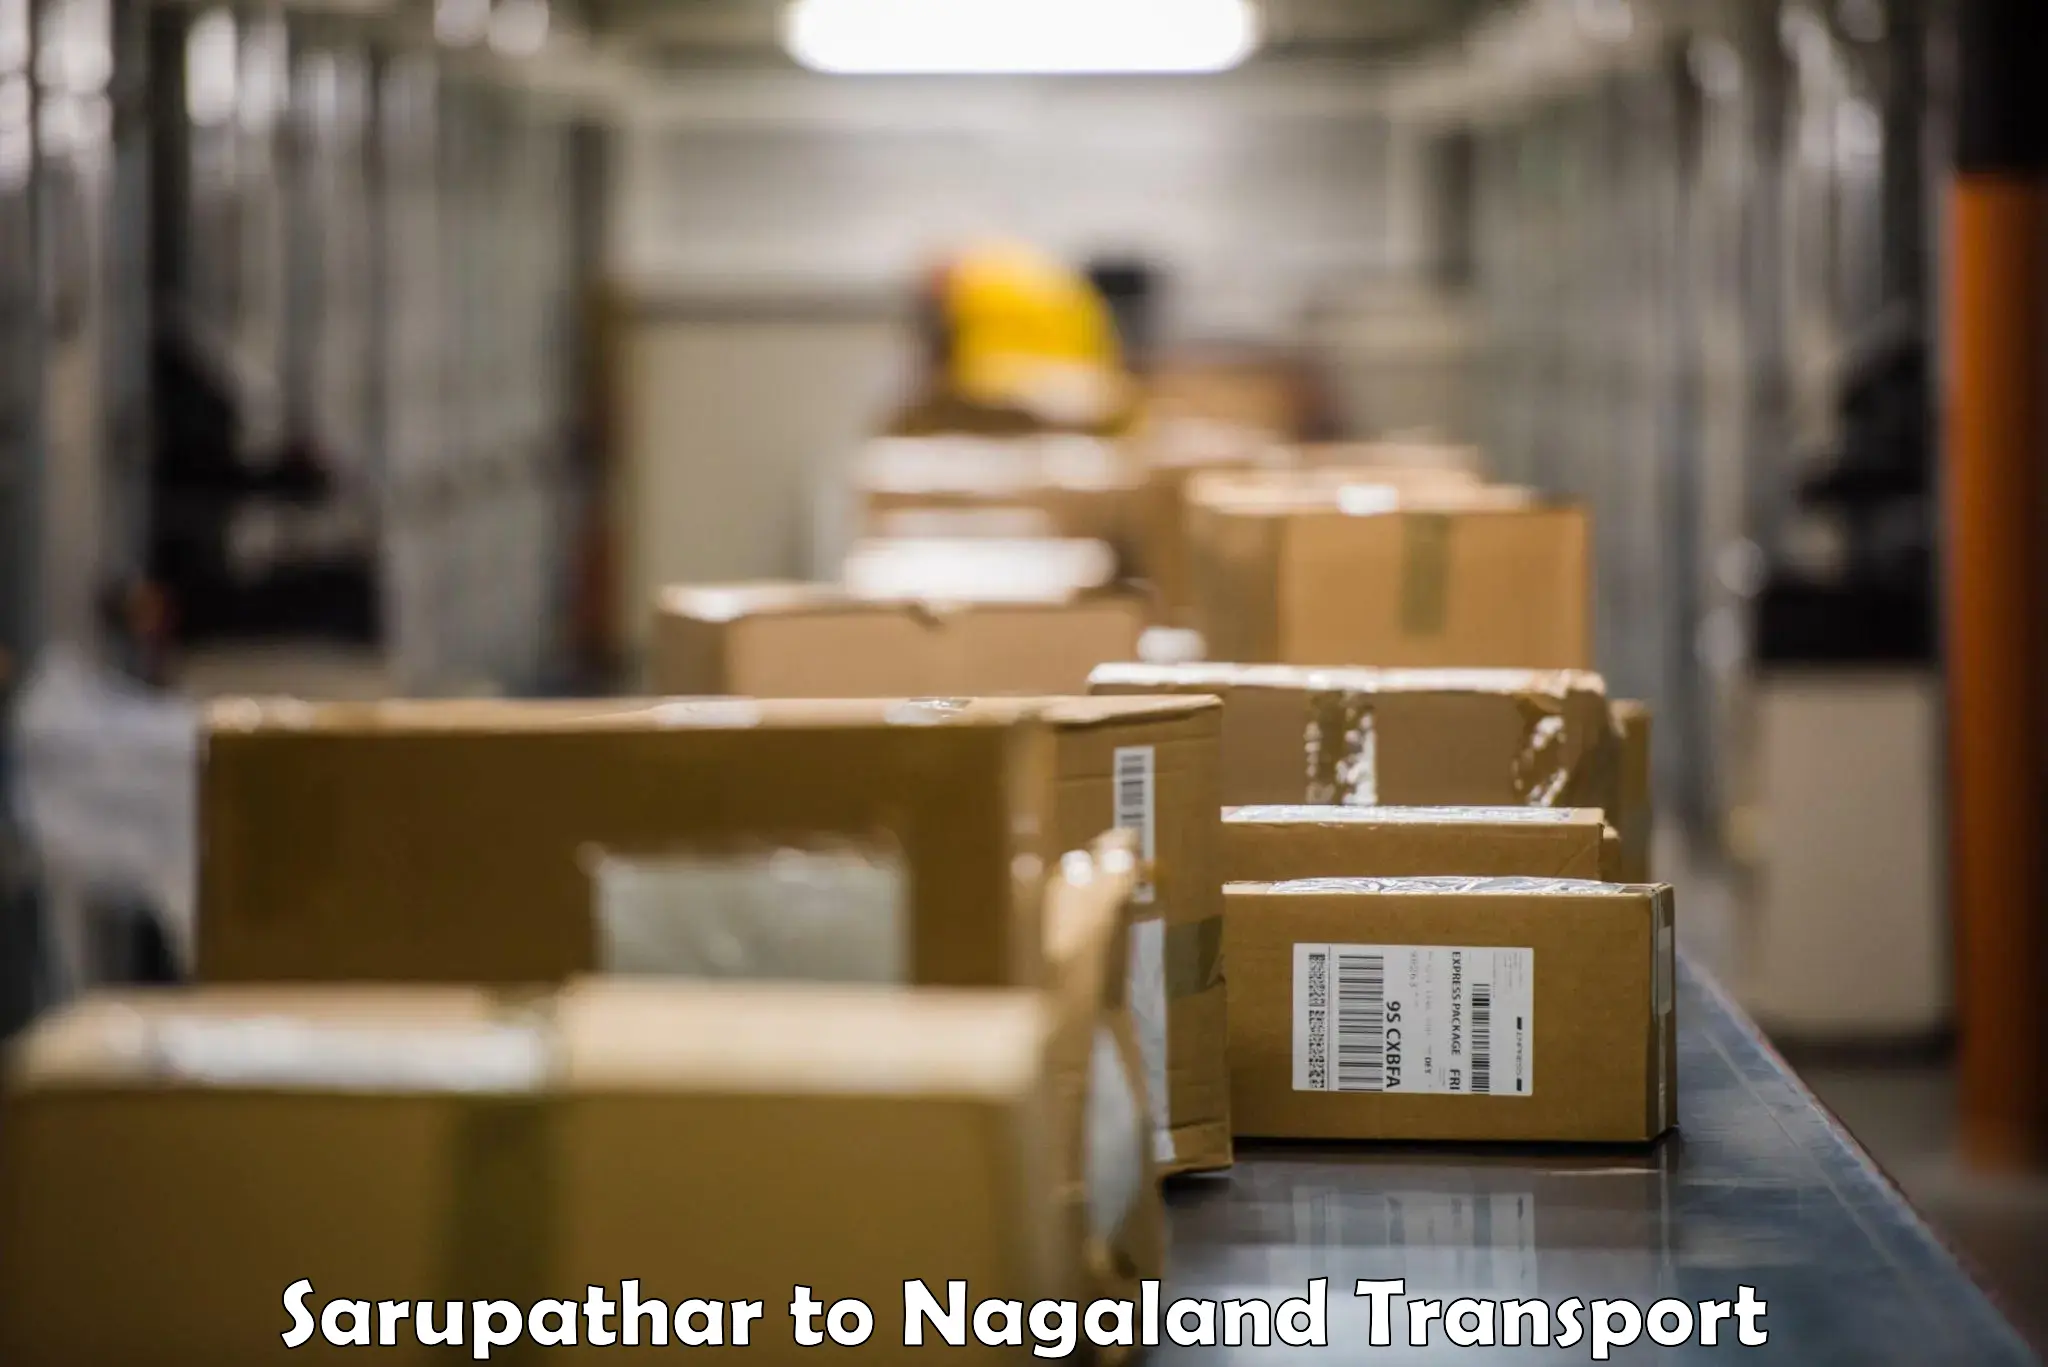 Online transport service Sarupathar to Nagaland